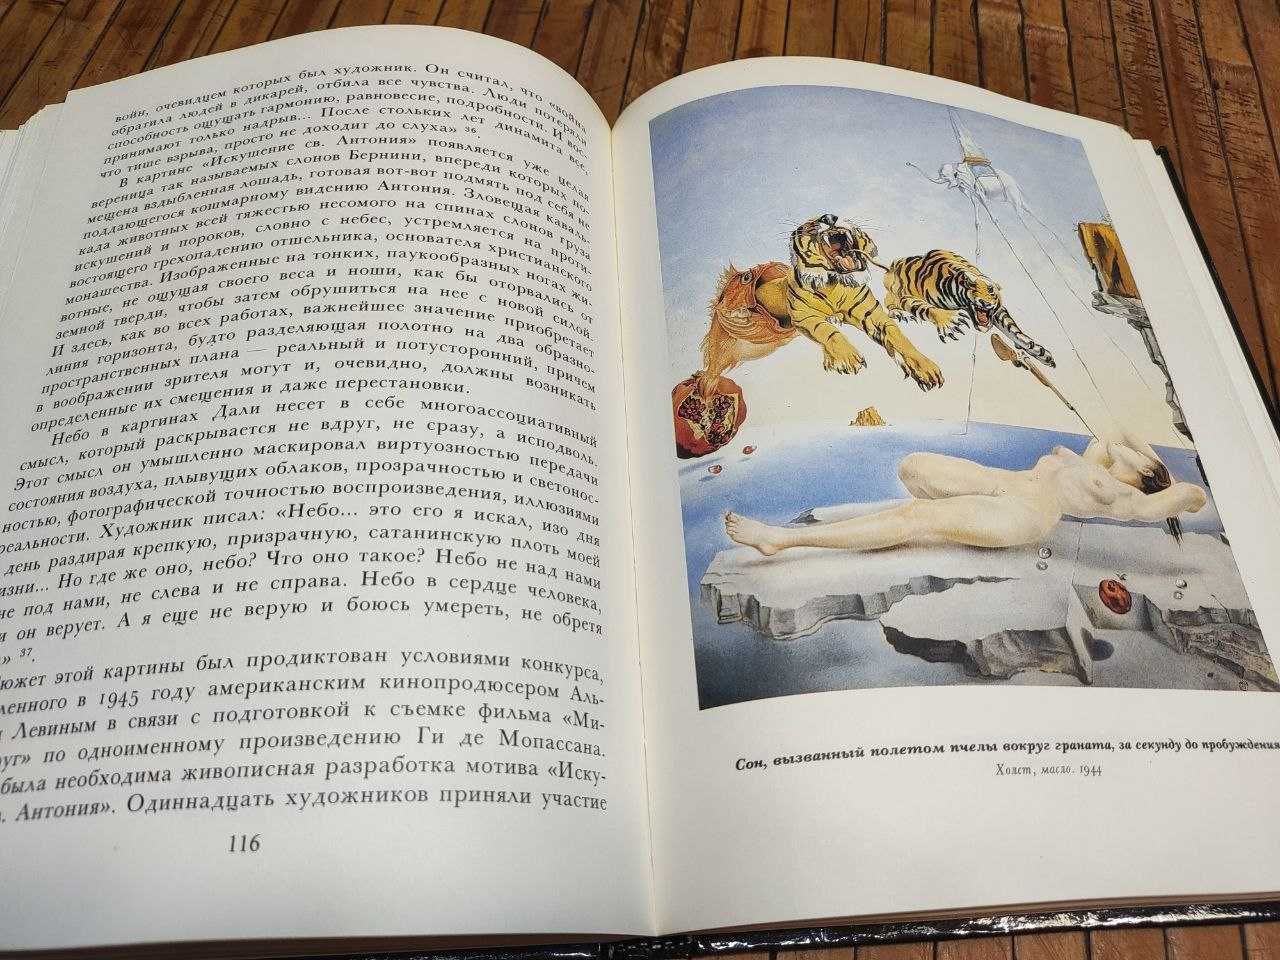 Сальвадор Дали: миф и реальность.Монография. Илл. А. Рожин, 1992